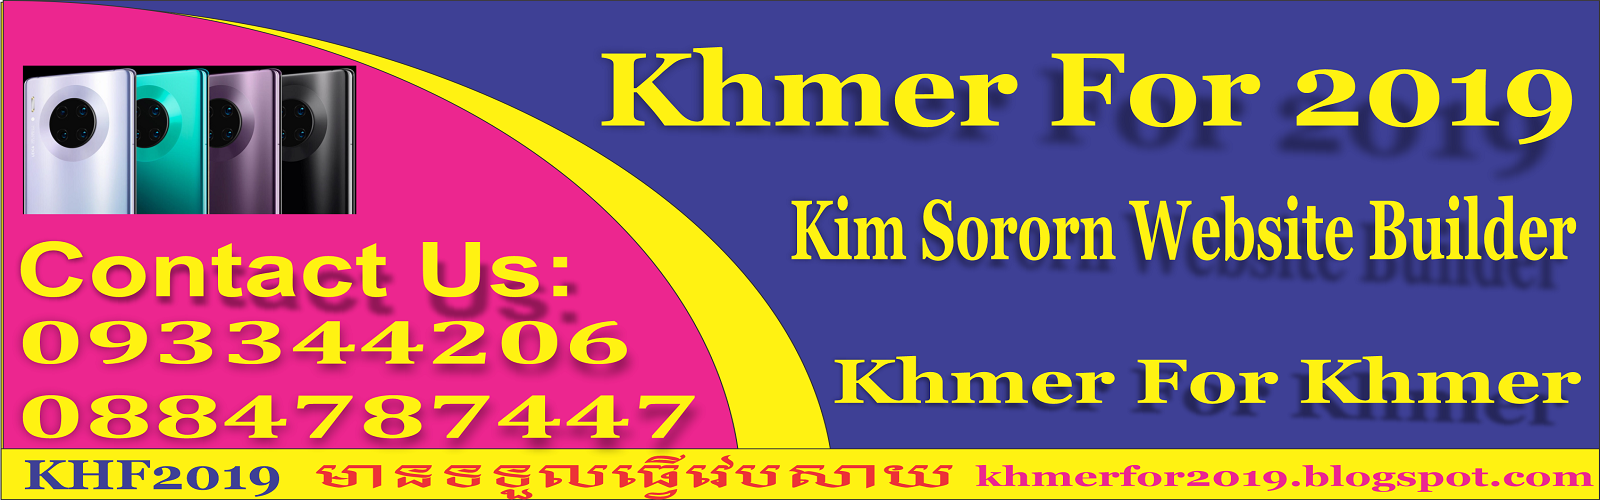 Khmer For 2019